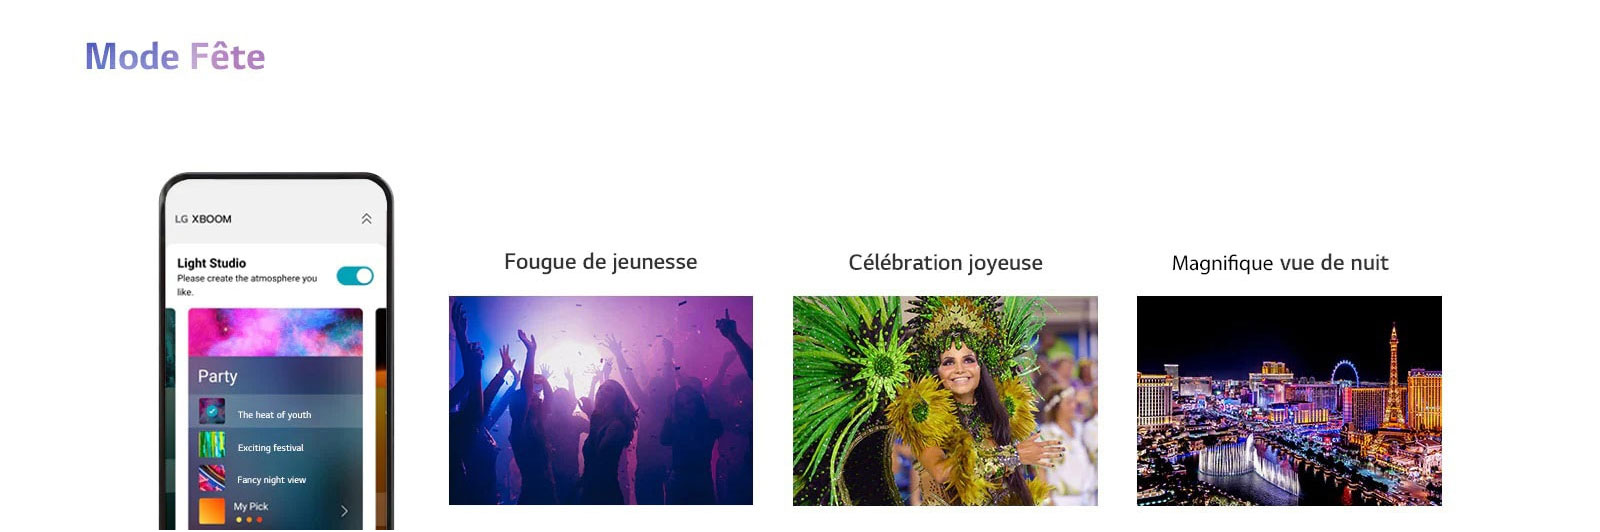 Image d’un téléphone portable avec l’écran APP allumé en mode Fête. Images des silhouettes de personnes dansant dans des clubs. Image d’une femme portant des vêtements de soirée de couleur. Vue nocturne d’une ville aux couleurs fluorescentes.